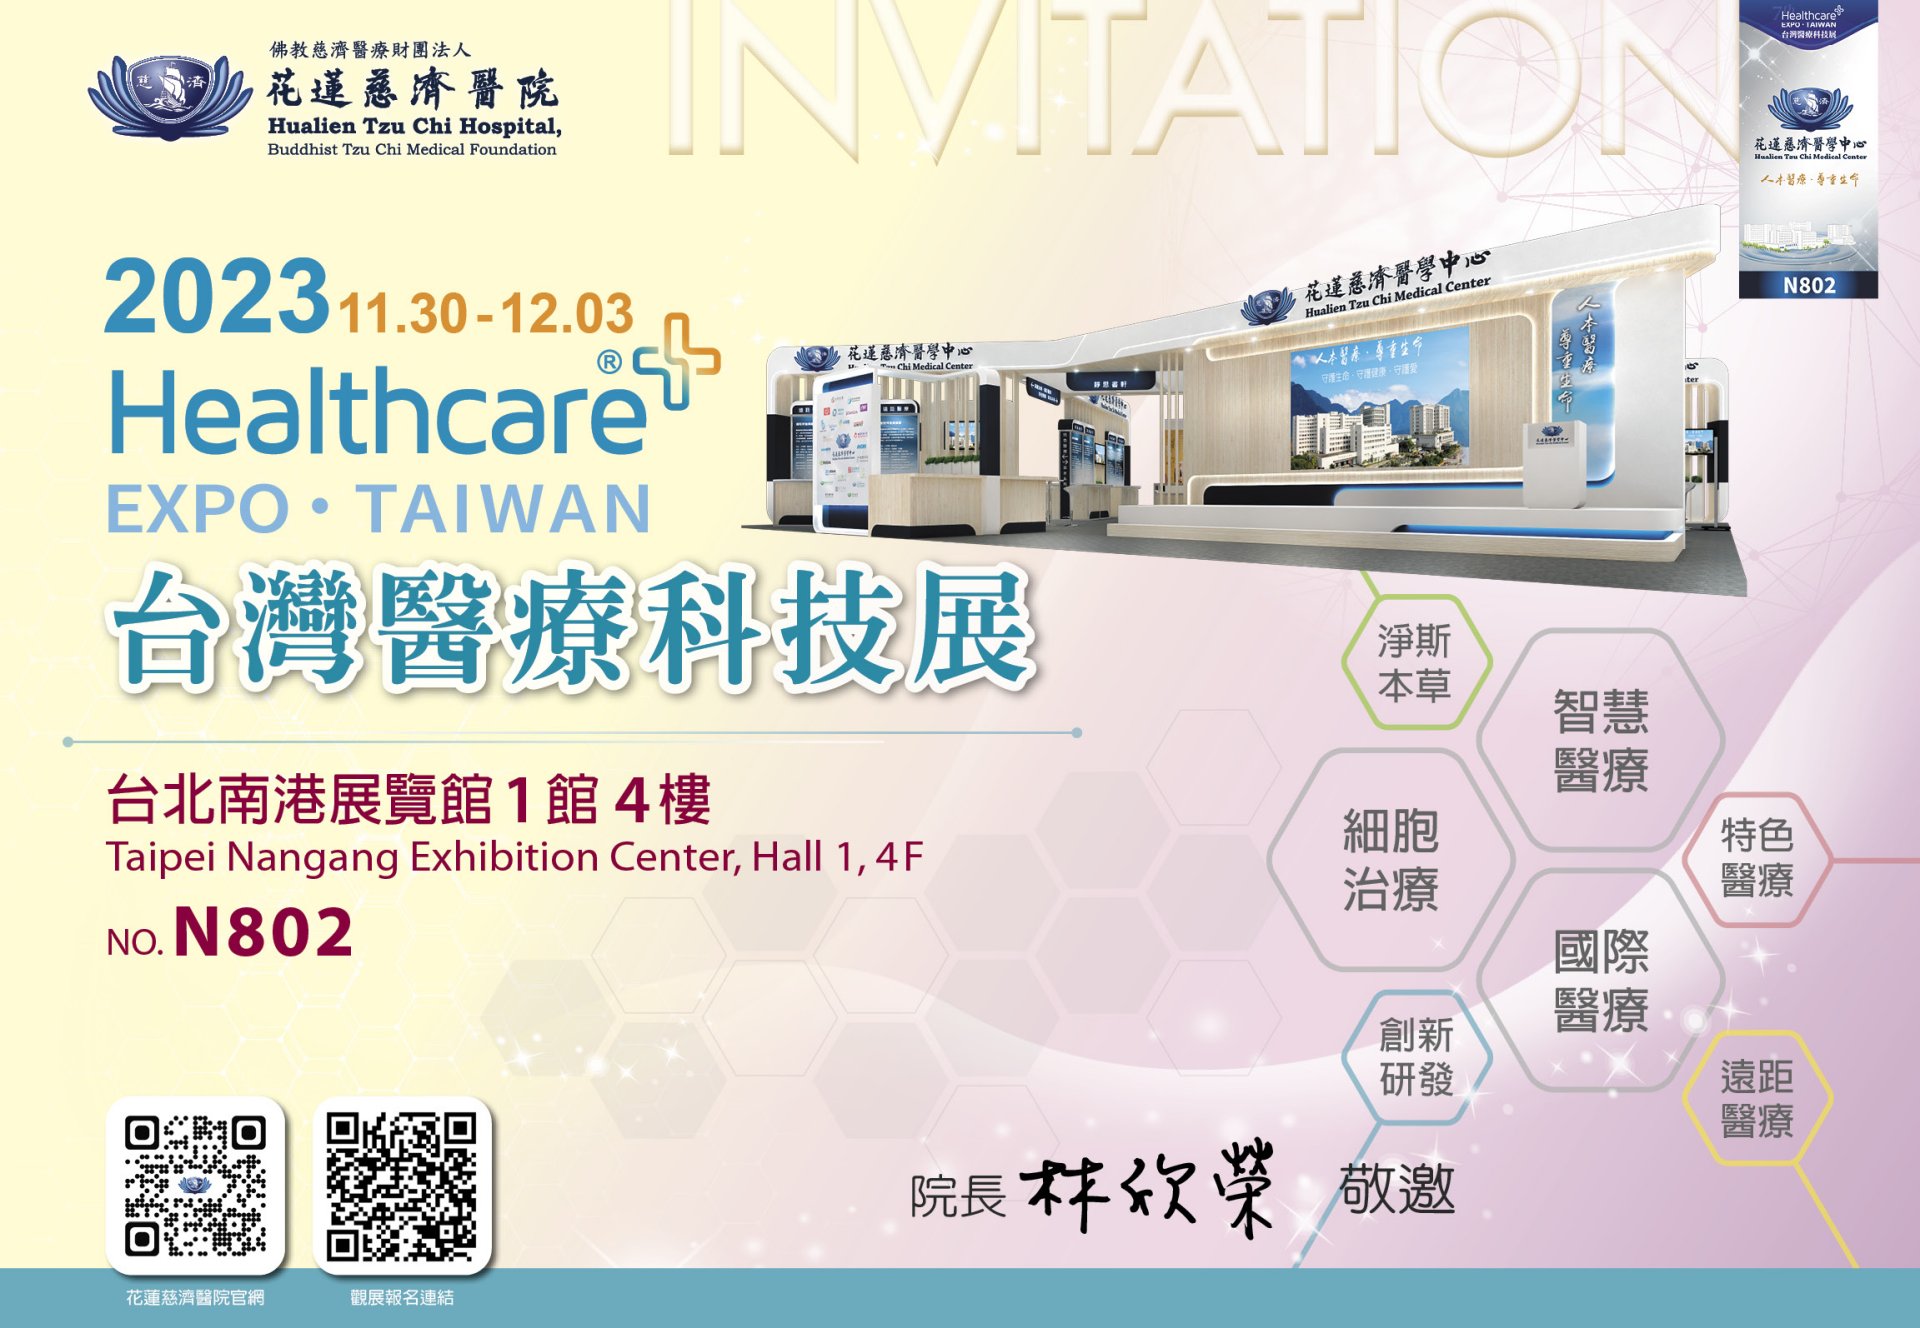 花蓮慈濟醫院將在11月30日至12月3日，在台灣醫療科技展分享醫療與創新研發成果及26場專家講座。